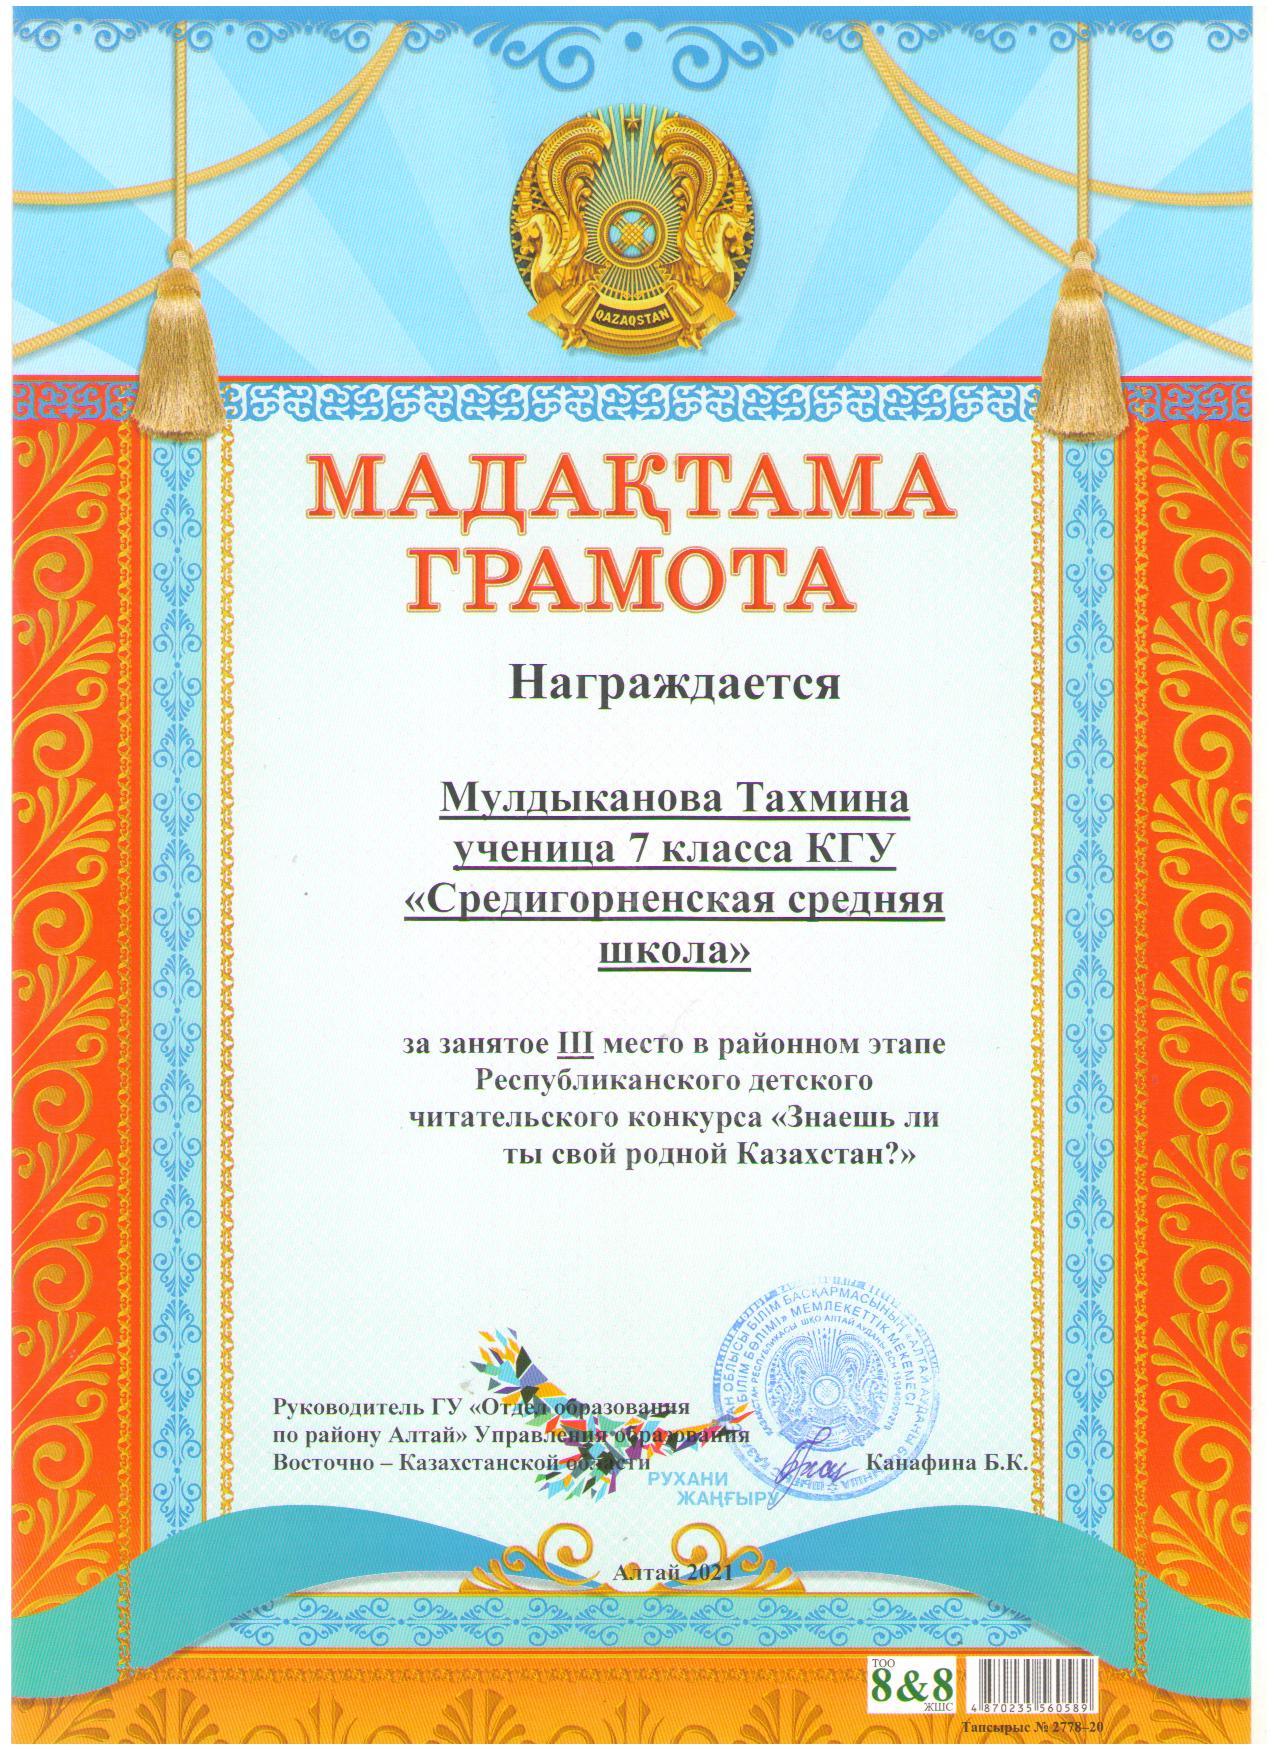 Конкурс «Знаешь ли ты свой родной Казахстан?»